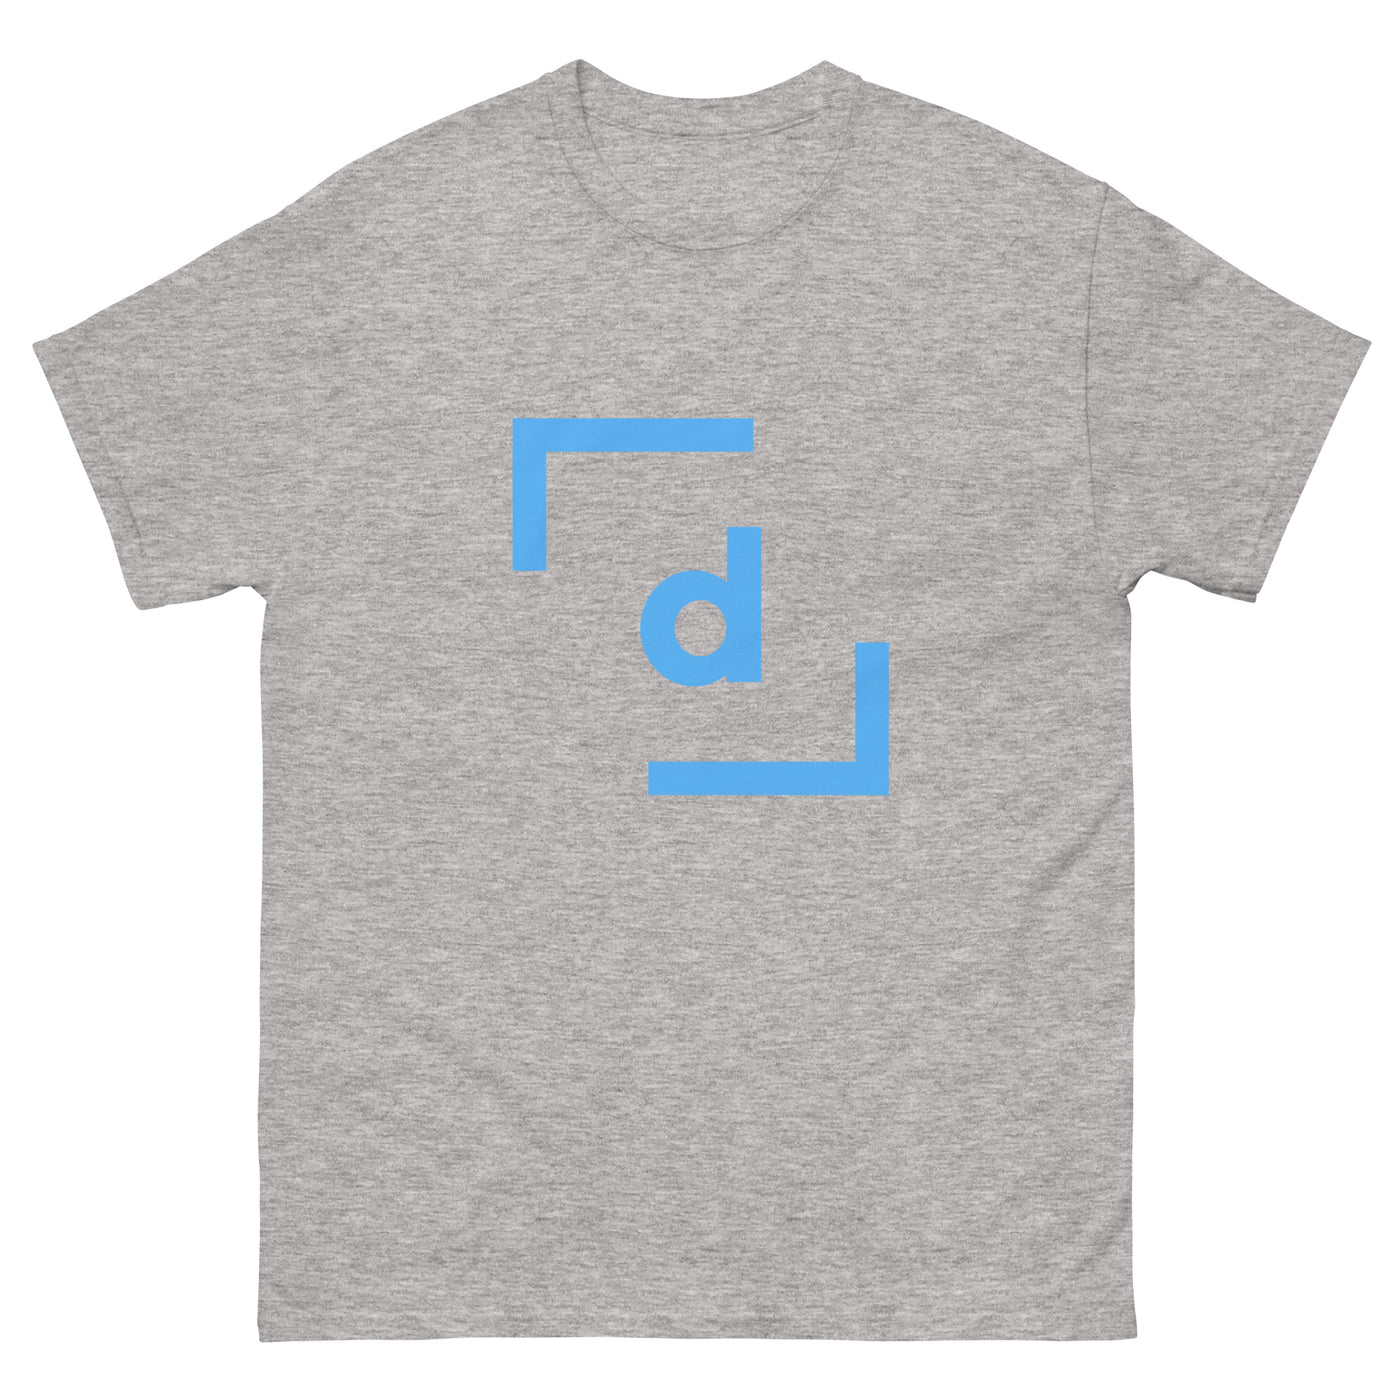 D’ Basic Tee (Men) - Blue Logo